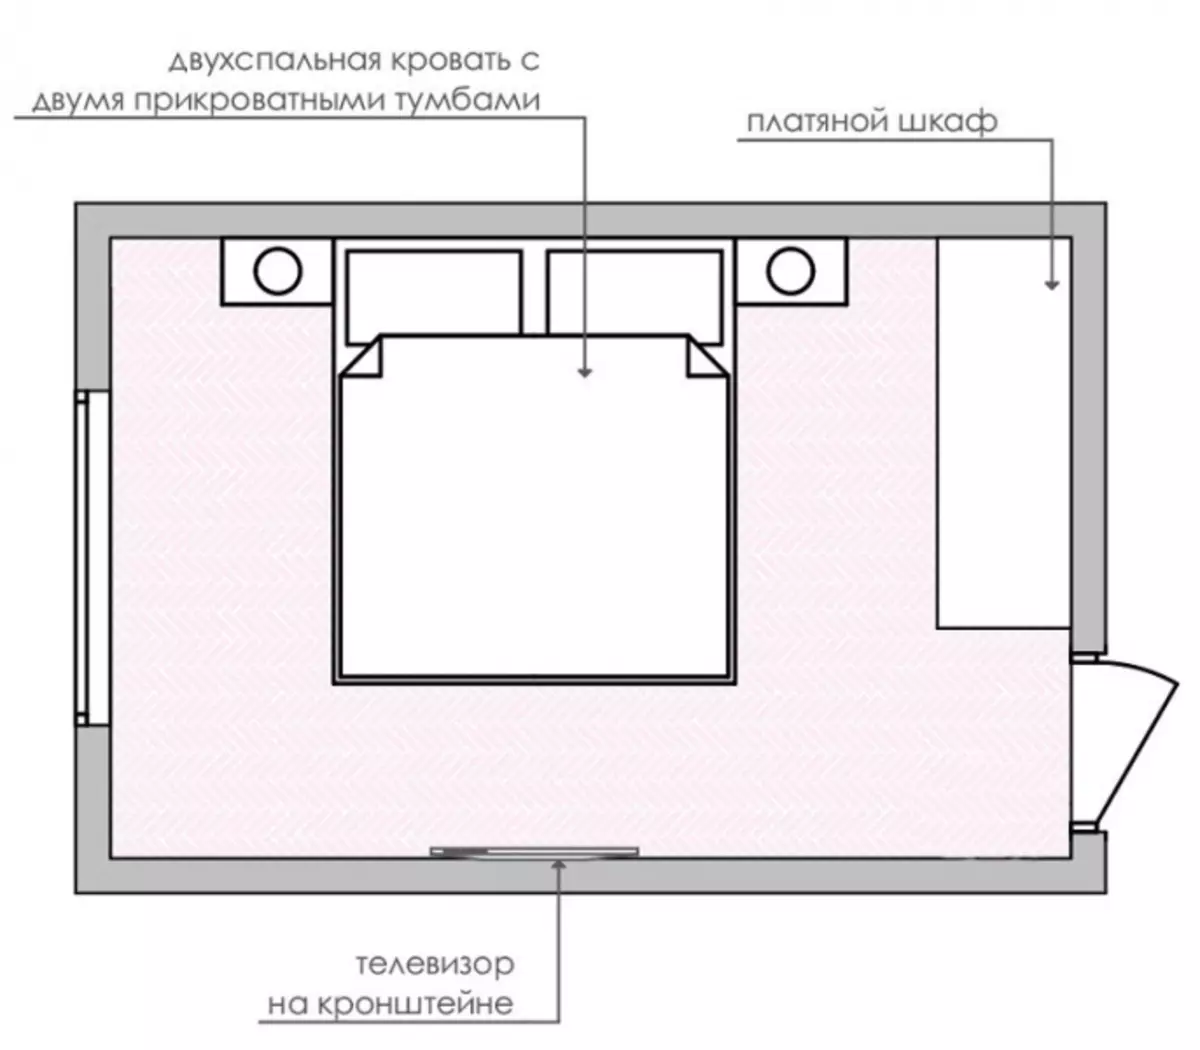 غرفة النوم تصميم 12 متر مربع M: كيفية تجهيز غرفة صغيرة + تخطيط جاهز (36 صورة)